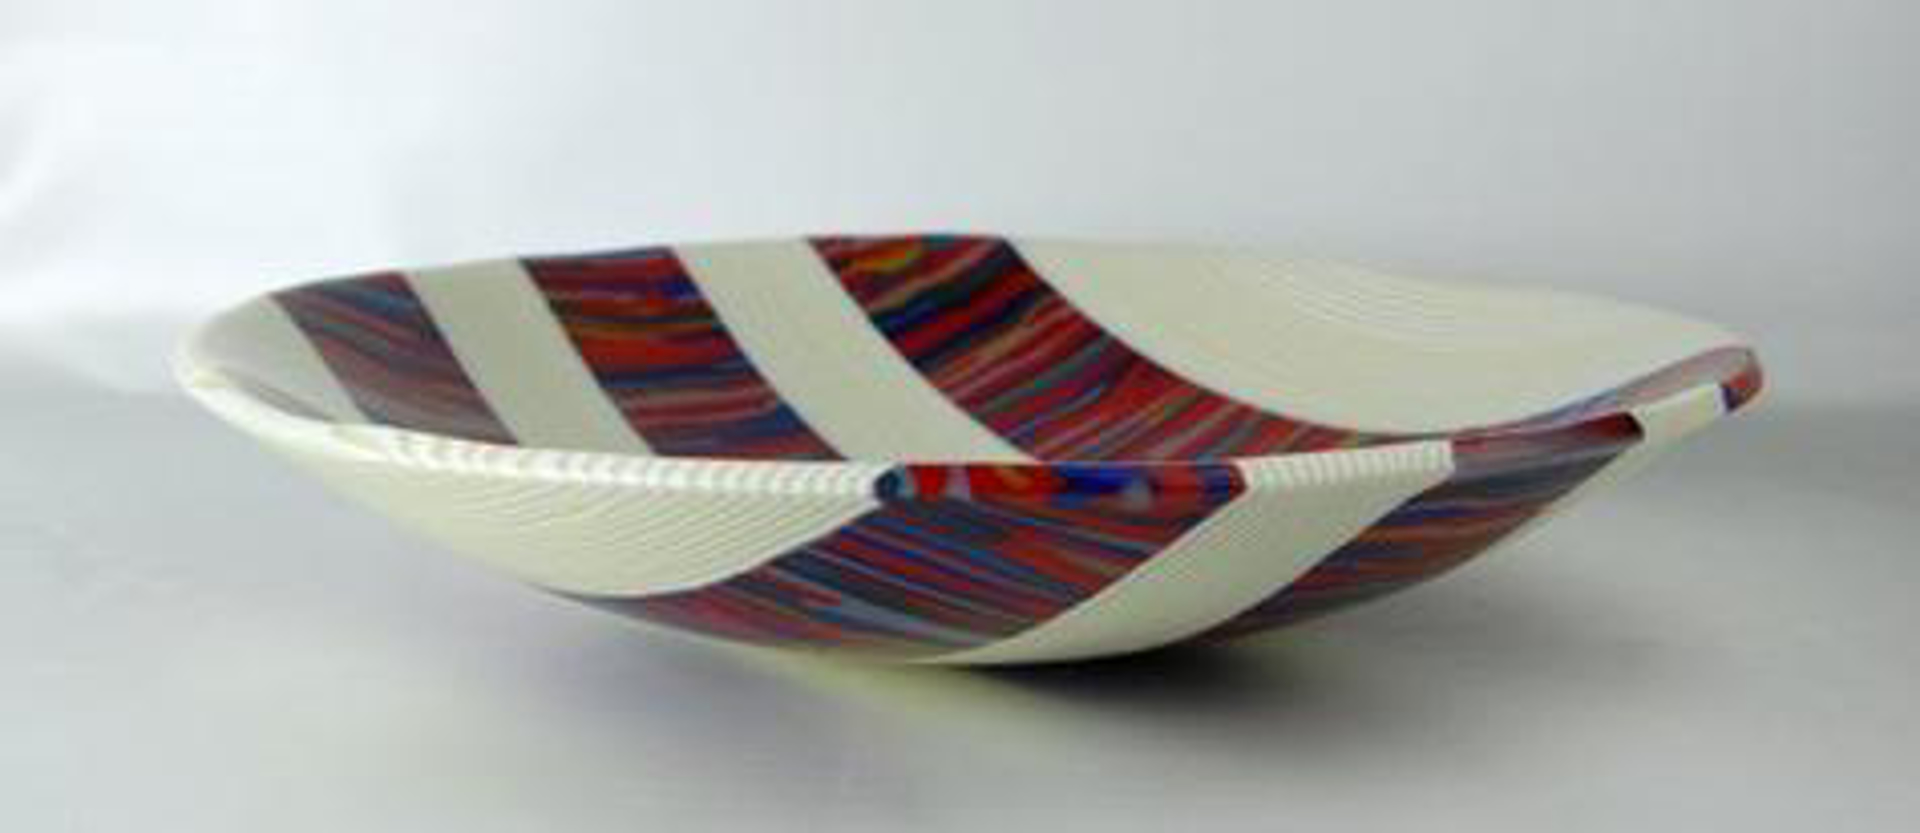 Stripes by Greg Rawls